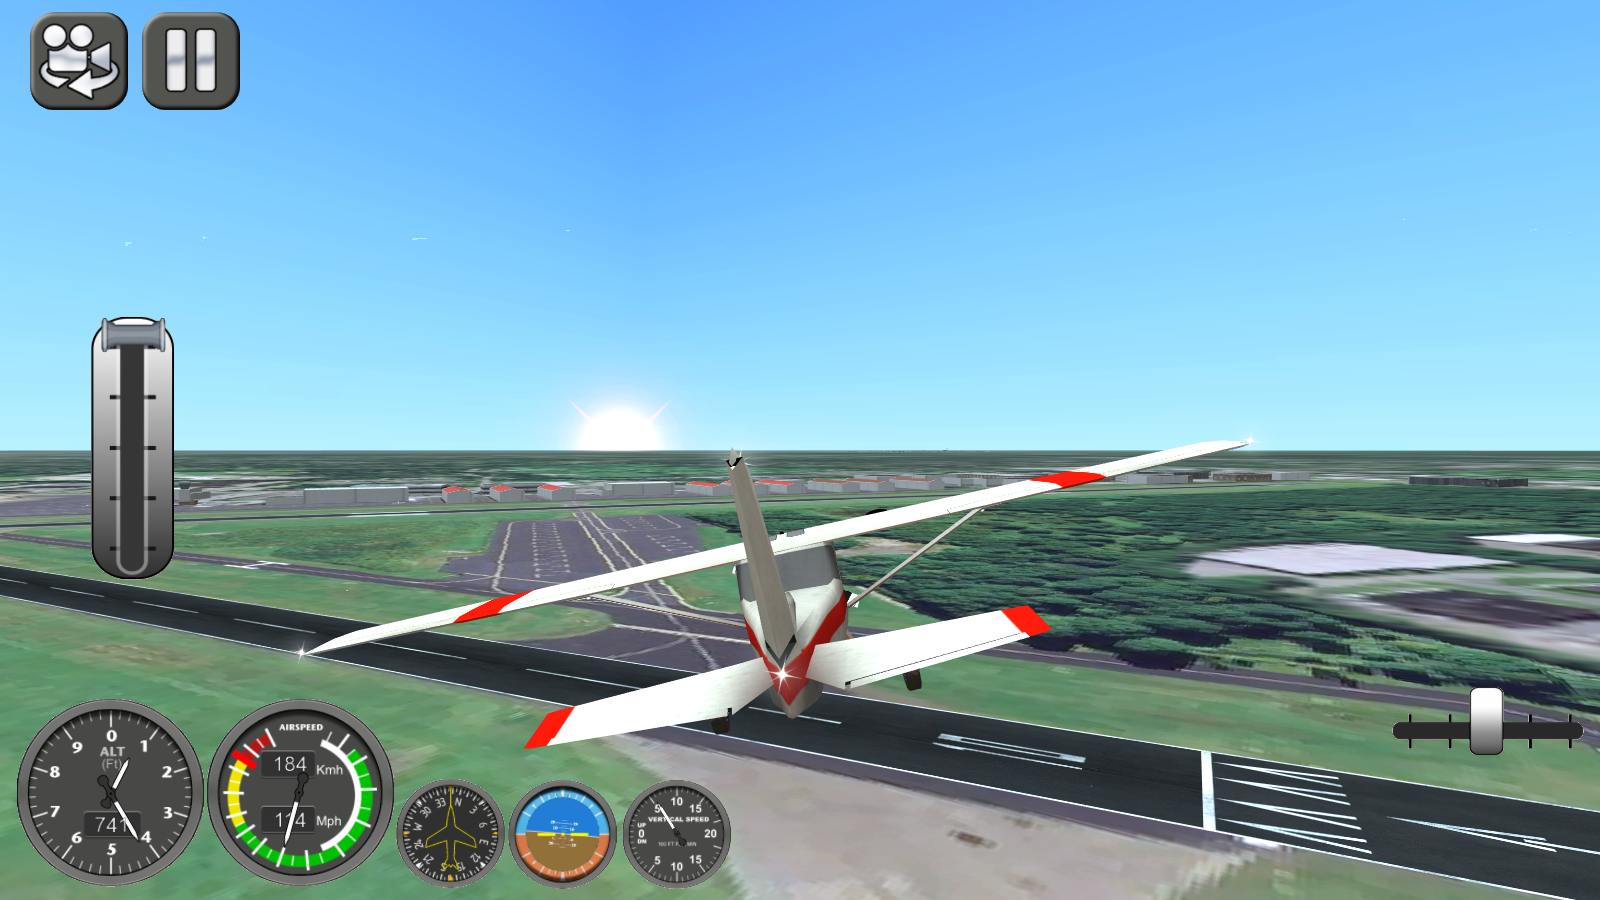 Flight Simulator X 2014 - NY - Android Apps on Google Play